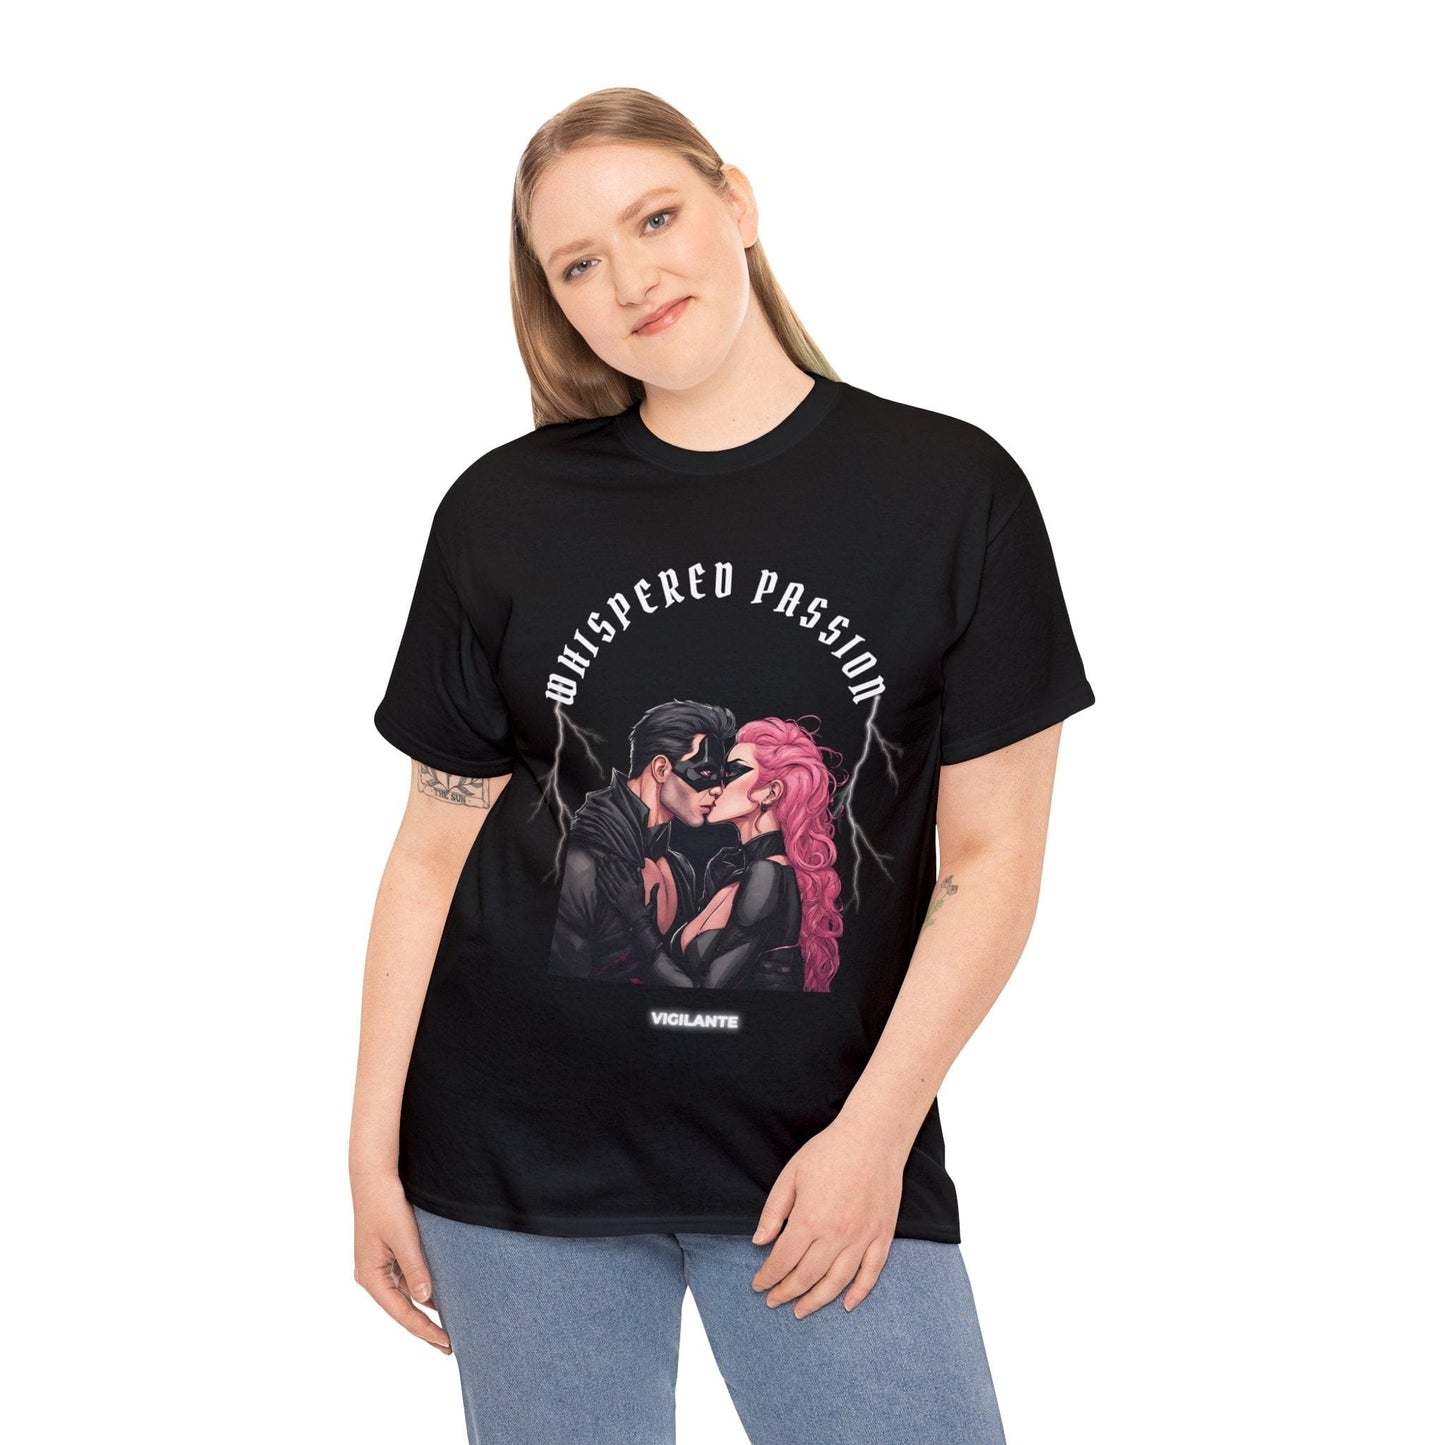 Super héroe camiseta Vigilante beso camisa susurrada pasión camiseta amor camiseta regalo para ella para él unisex camiseta de algodón pesado Flashlander